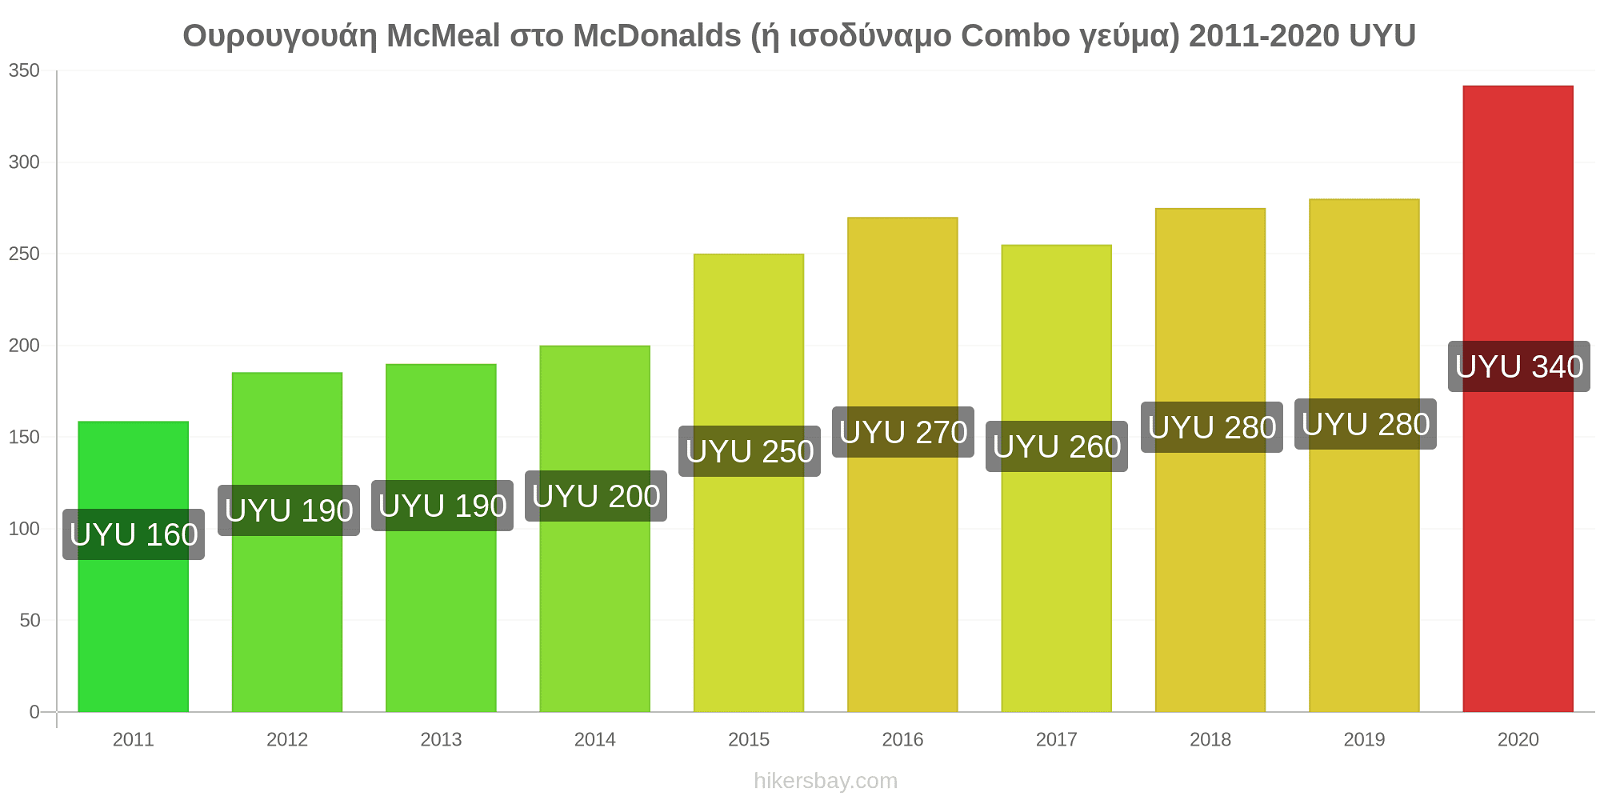 Ουρουγουάη αλλαγές τιμών McMeal στο McDonalds (ή ισοδύναμο Combo γεύμα) hikersbay.com